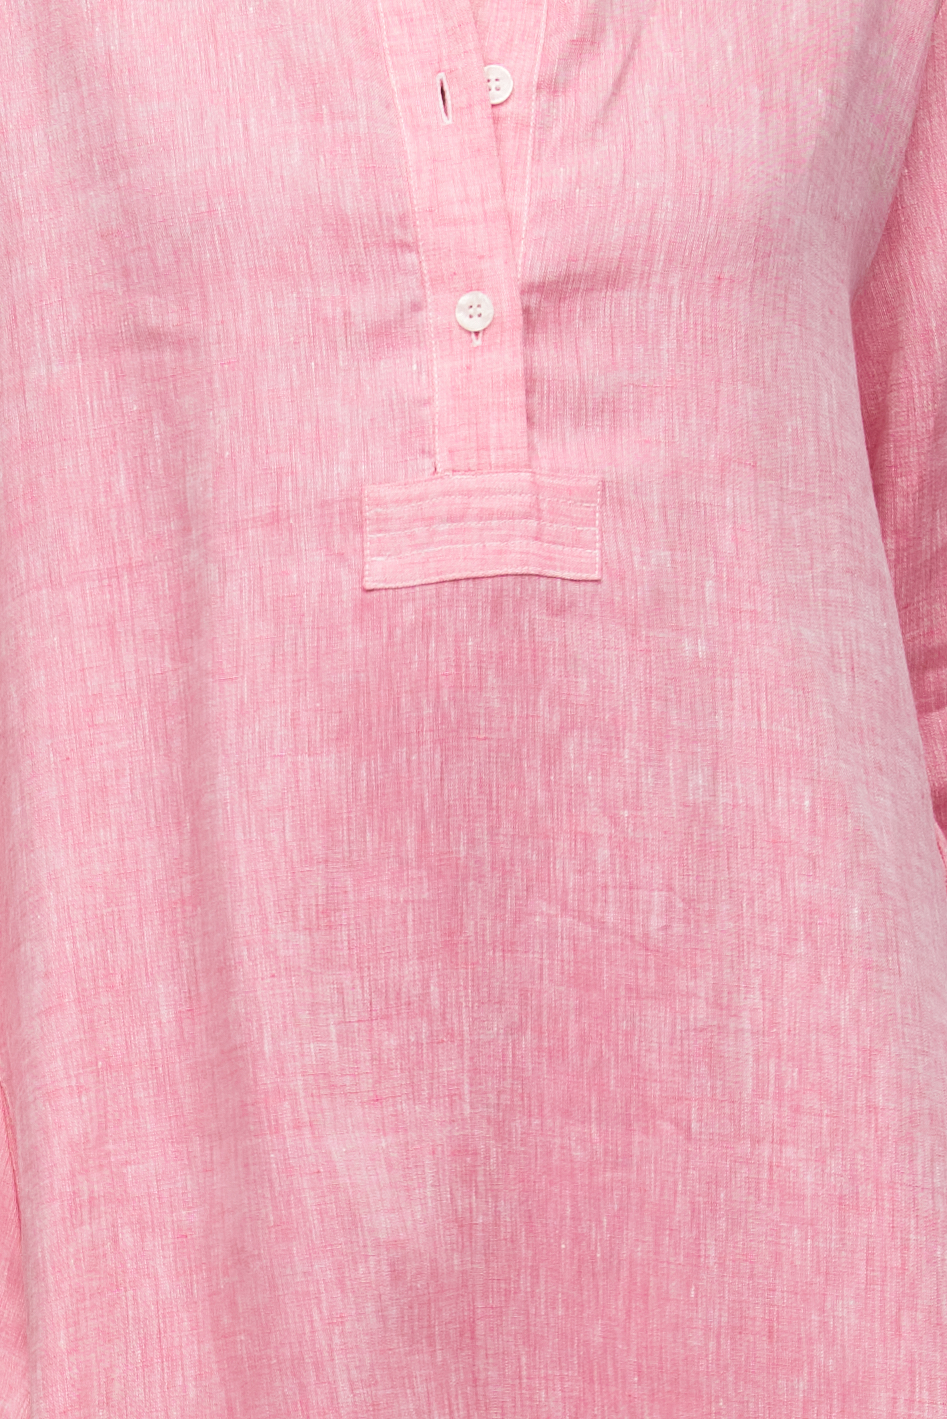 Woven T-Shirt Raspberry Pink Linen